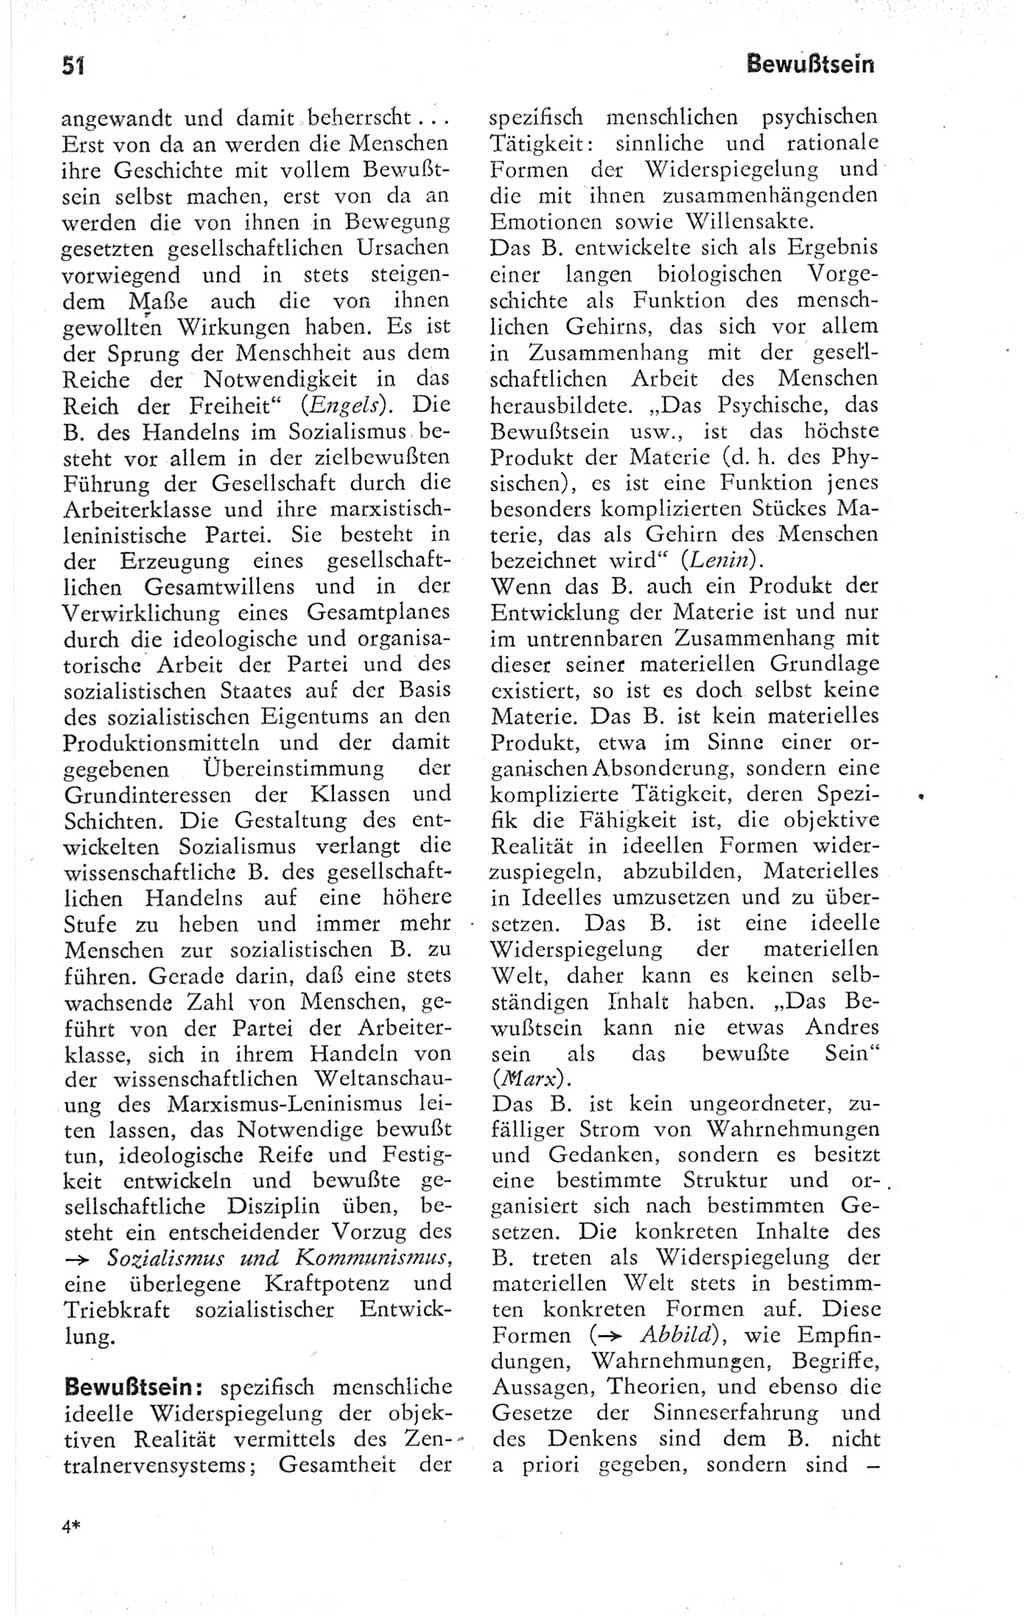 Kleines Wörterbuch der marxistisch-leninistischen Philosophie [Deutsche Demokratische Republik (DDR)] 1974, Seite 51 (Kl. Wb. ML Phil. DDR 1974, S. 51)